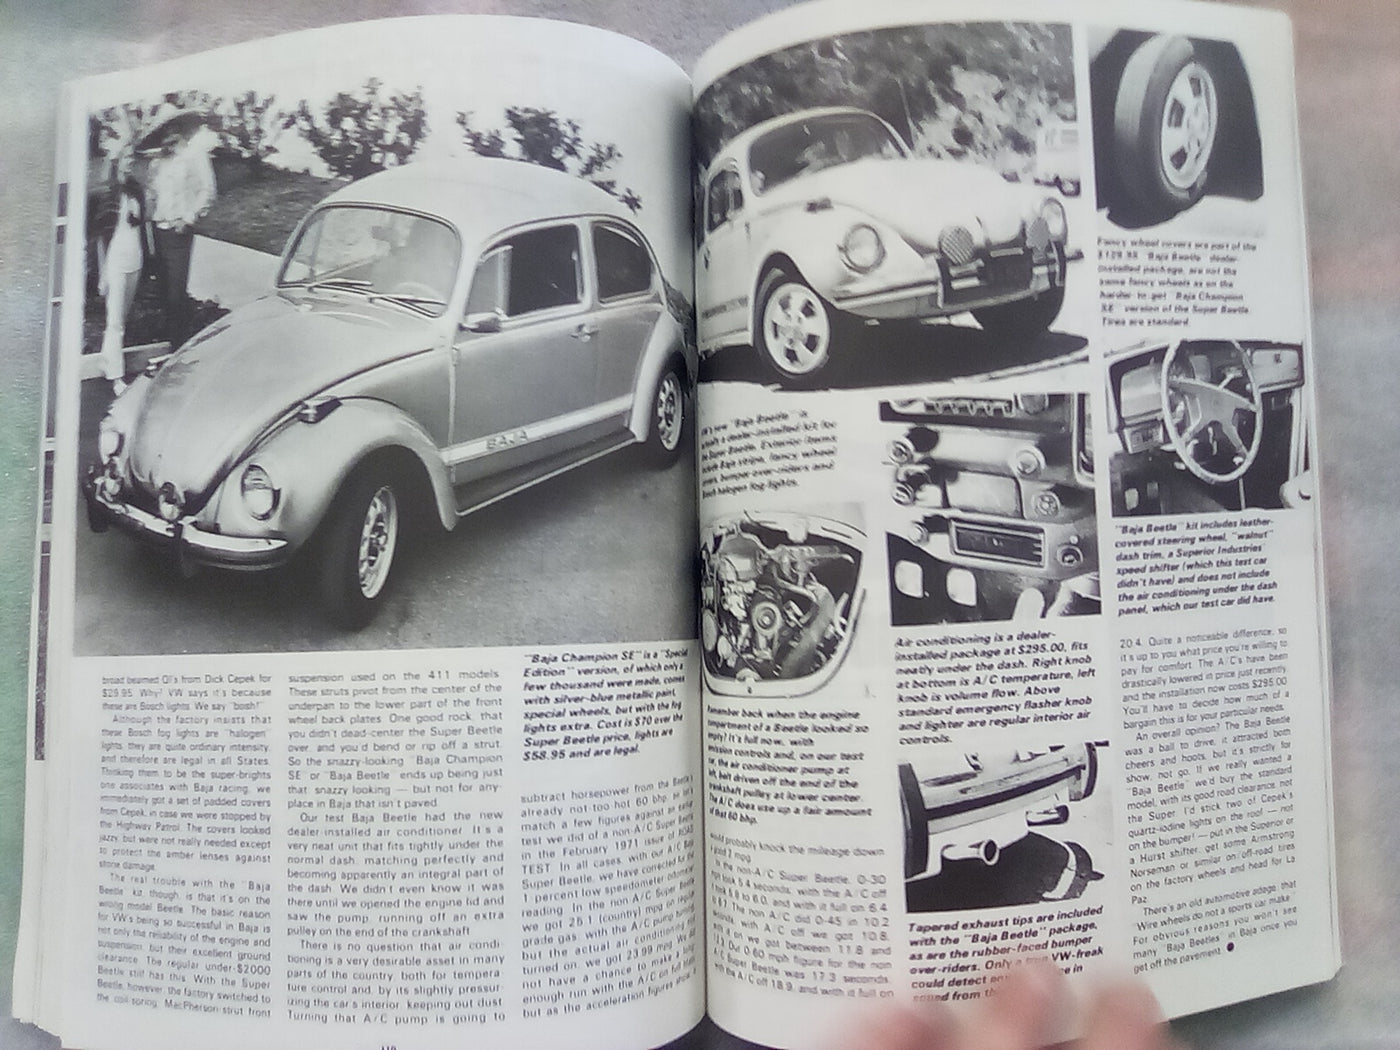 VW Beetle Gold Portfolio 1968-1991 (Brooklands Road test)